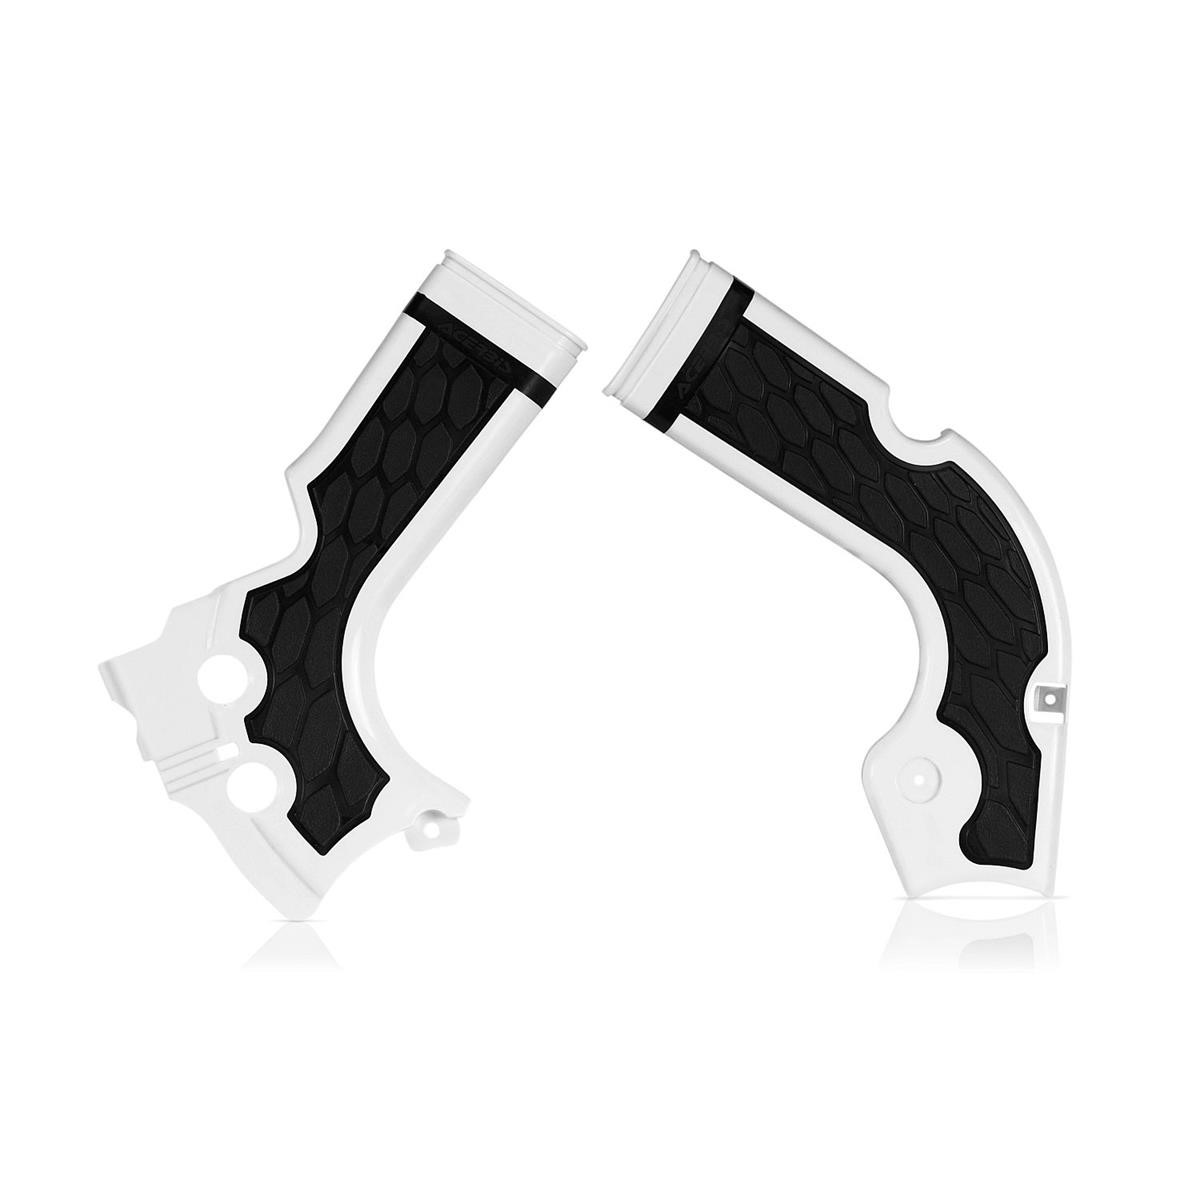 Acerbis Protections de Cadre Anti-Dérapante X-Grip Honda CRF 250 14-17, CRF 450 13-16, Blanc/Noir